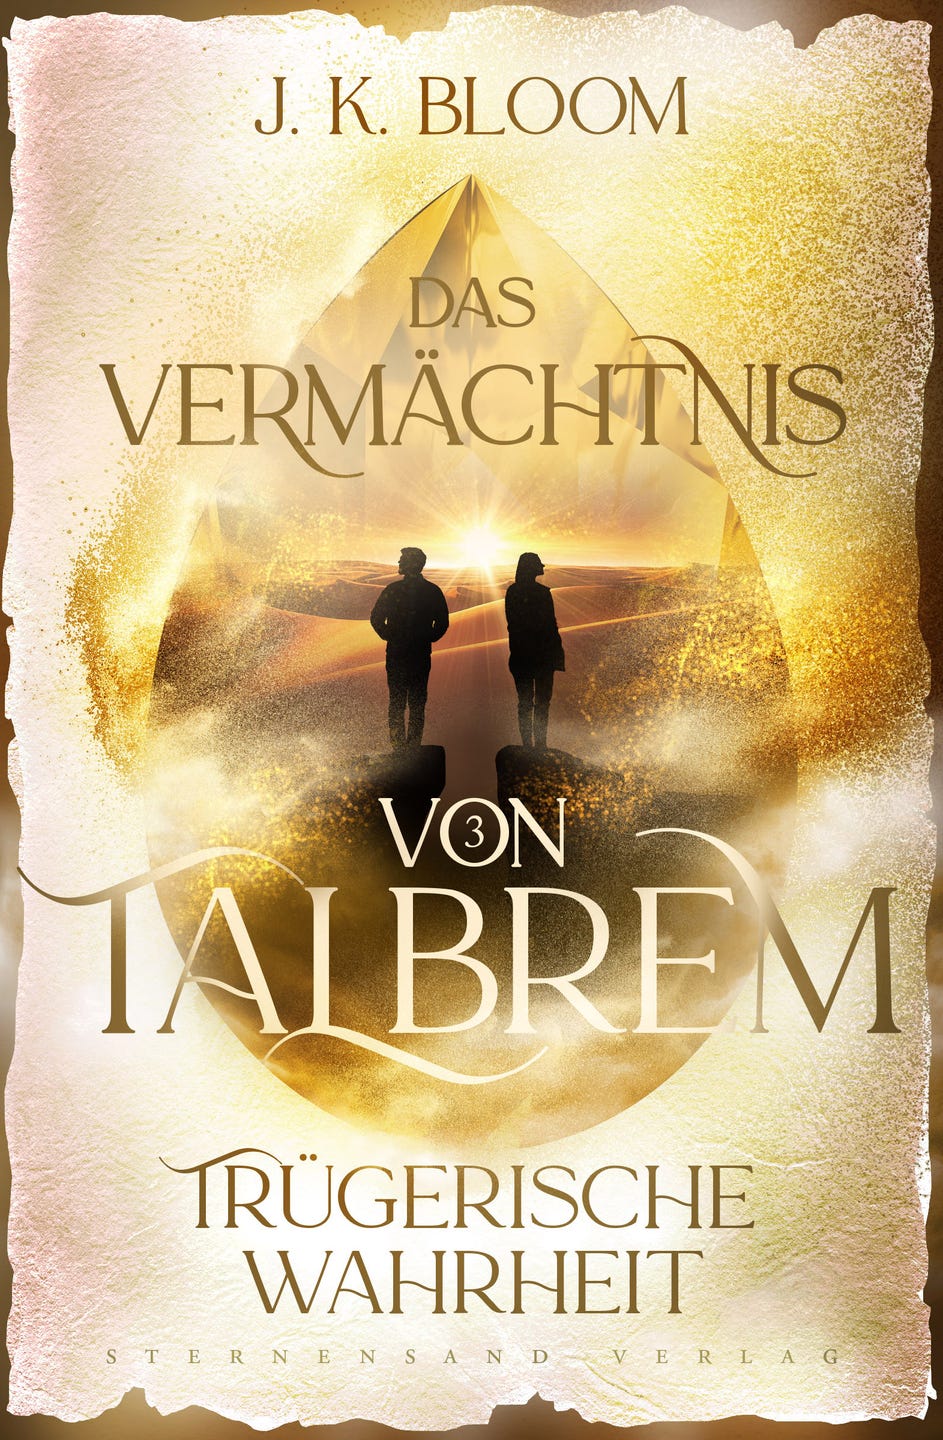 Bücherblog. Rezension. Buchcover. Das Vermächtnis von Talbrem - Trügerische Wahrheit (Band 3) von J. K. Bloom. Urban Fantasy. Sternensand Verlag.